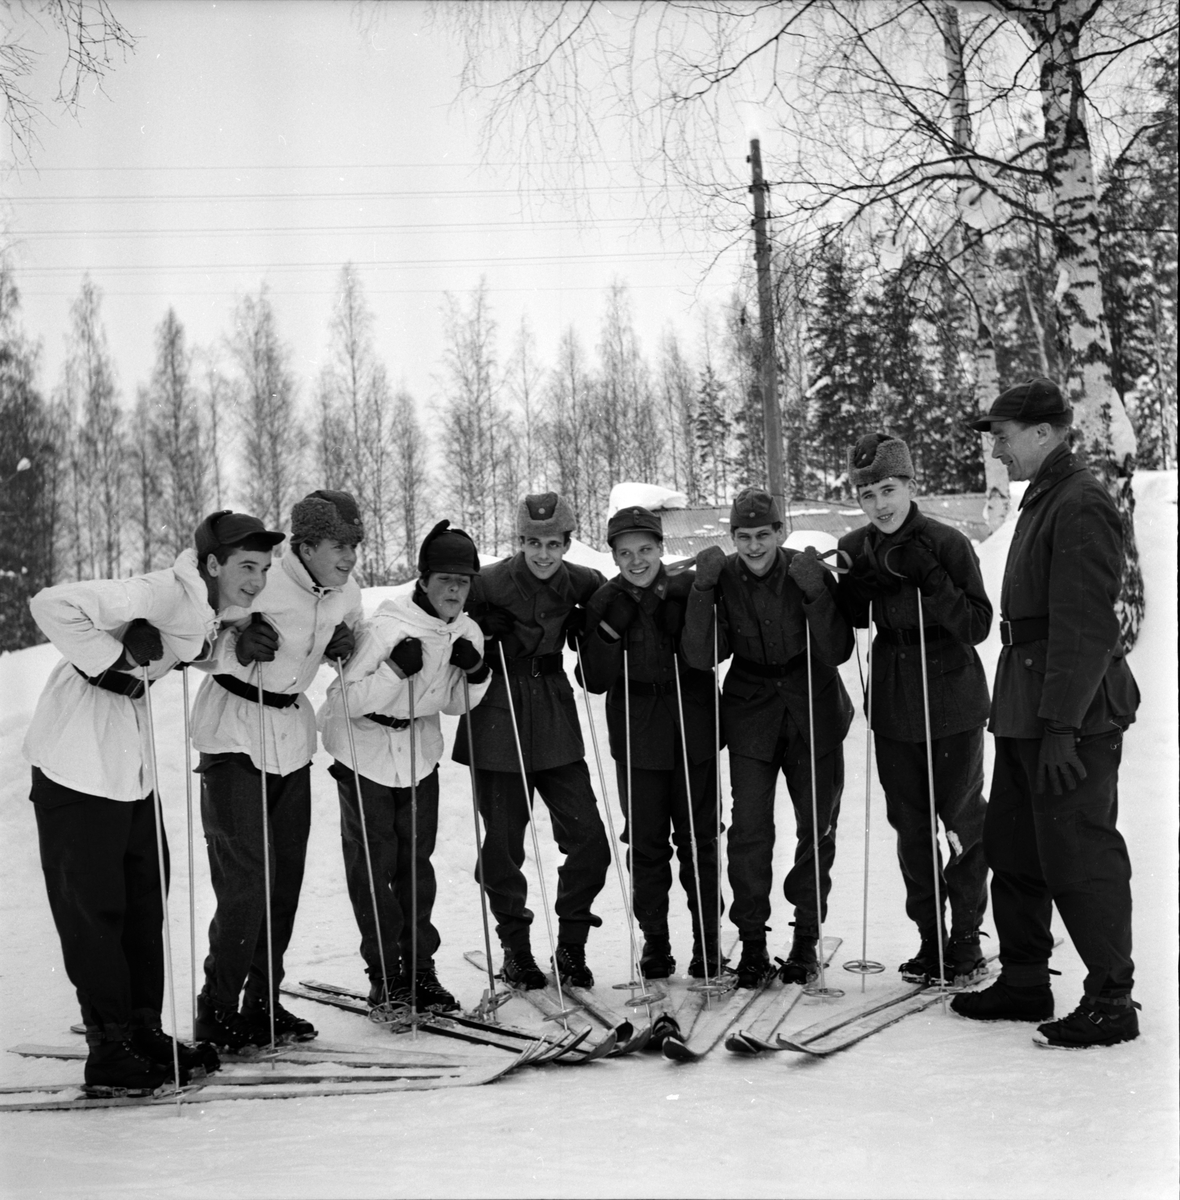 Stagården,
Ungdomar på kurs,
1 Mars 1966